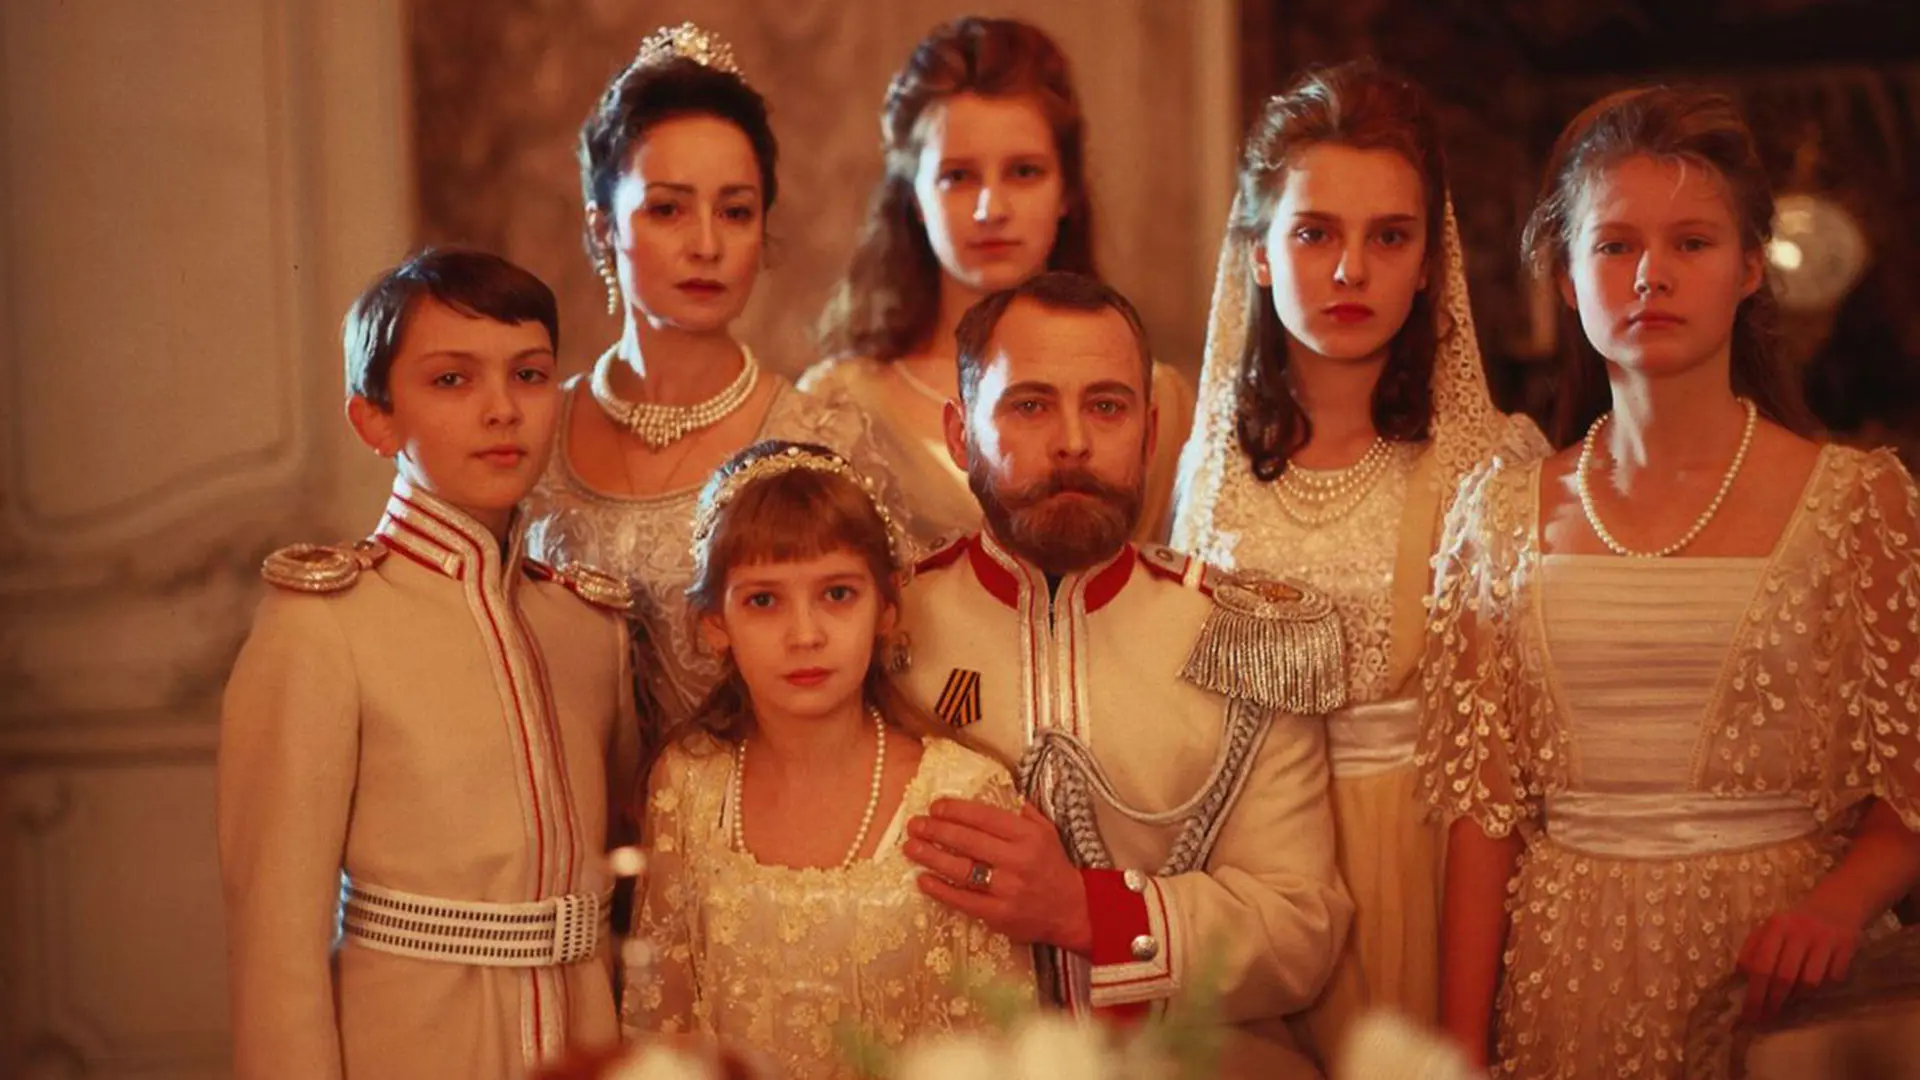 خانواده سلطنتی در فیلم کشتی روسی